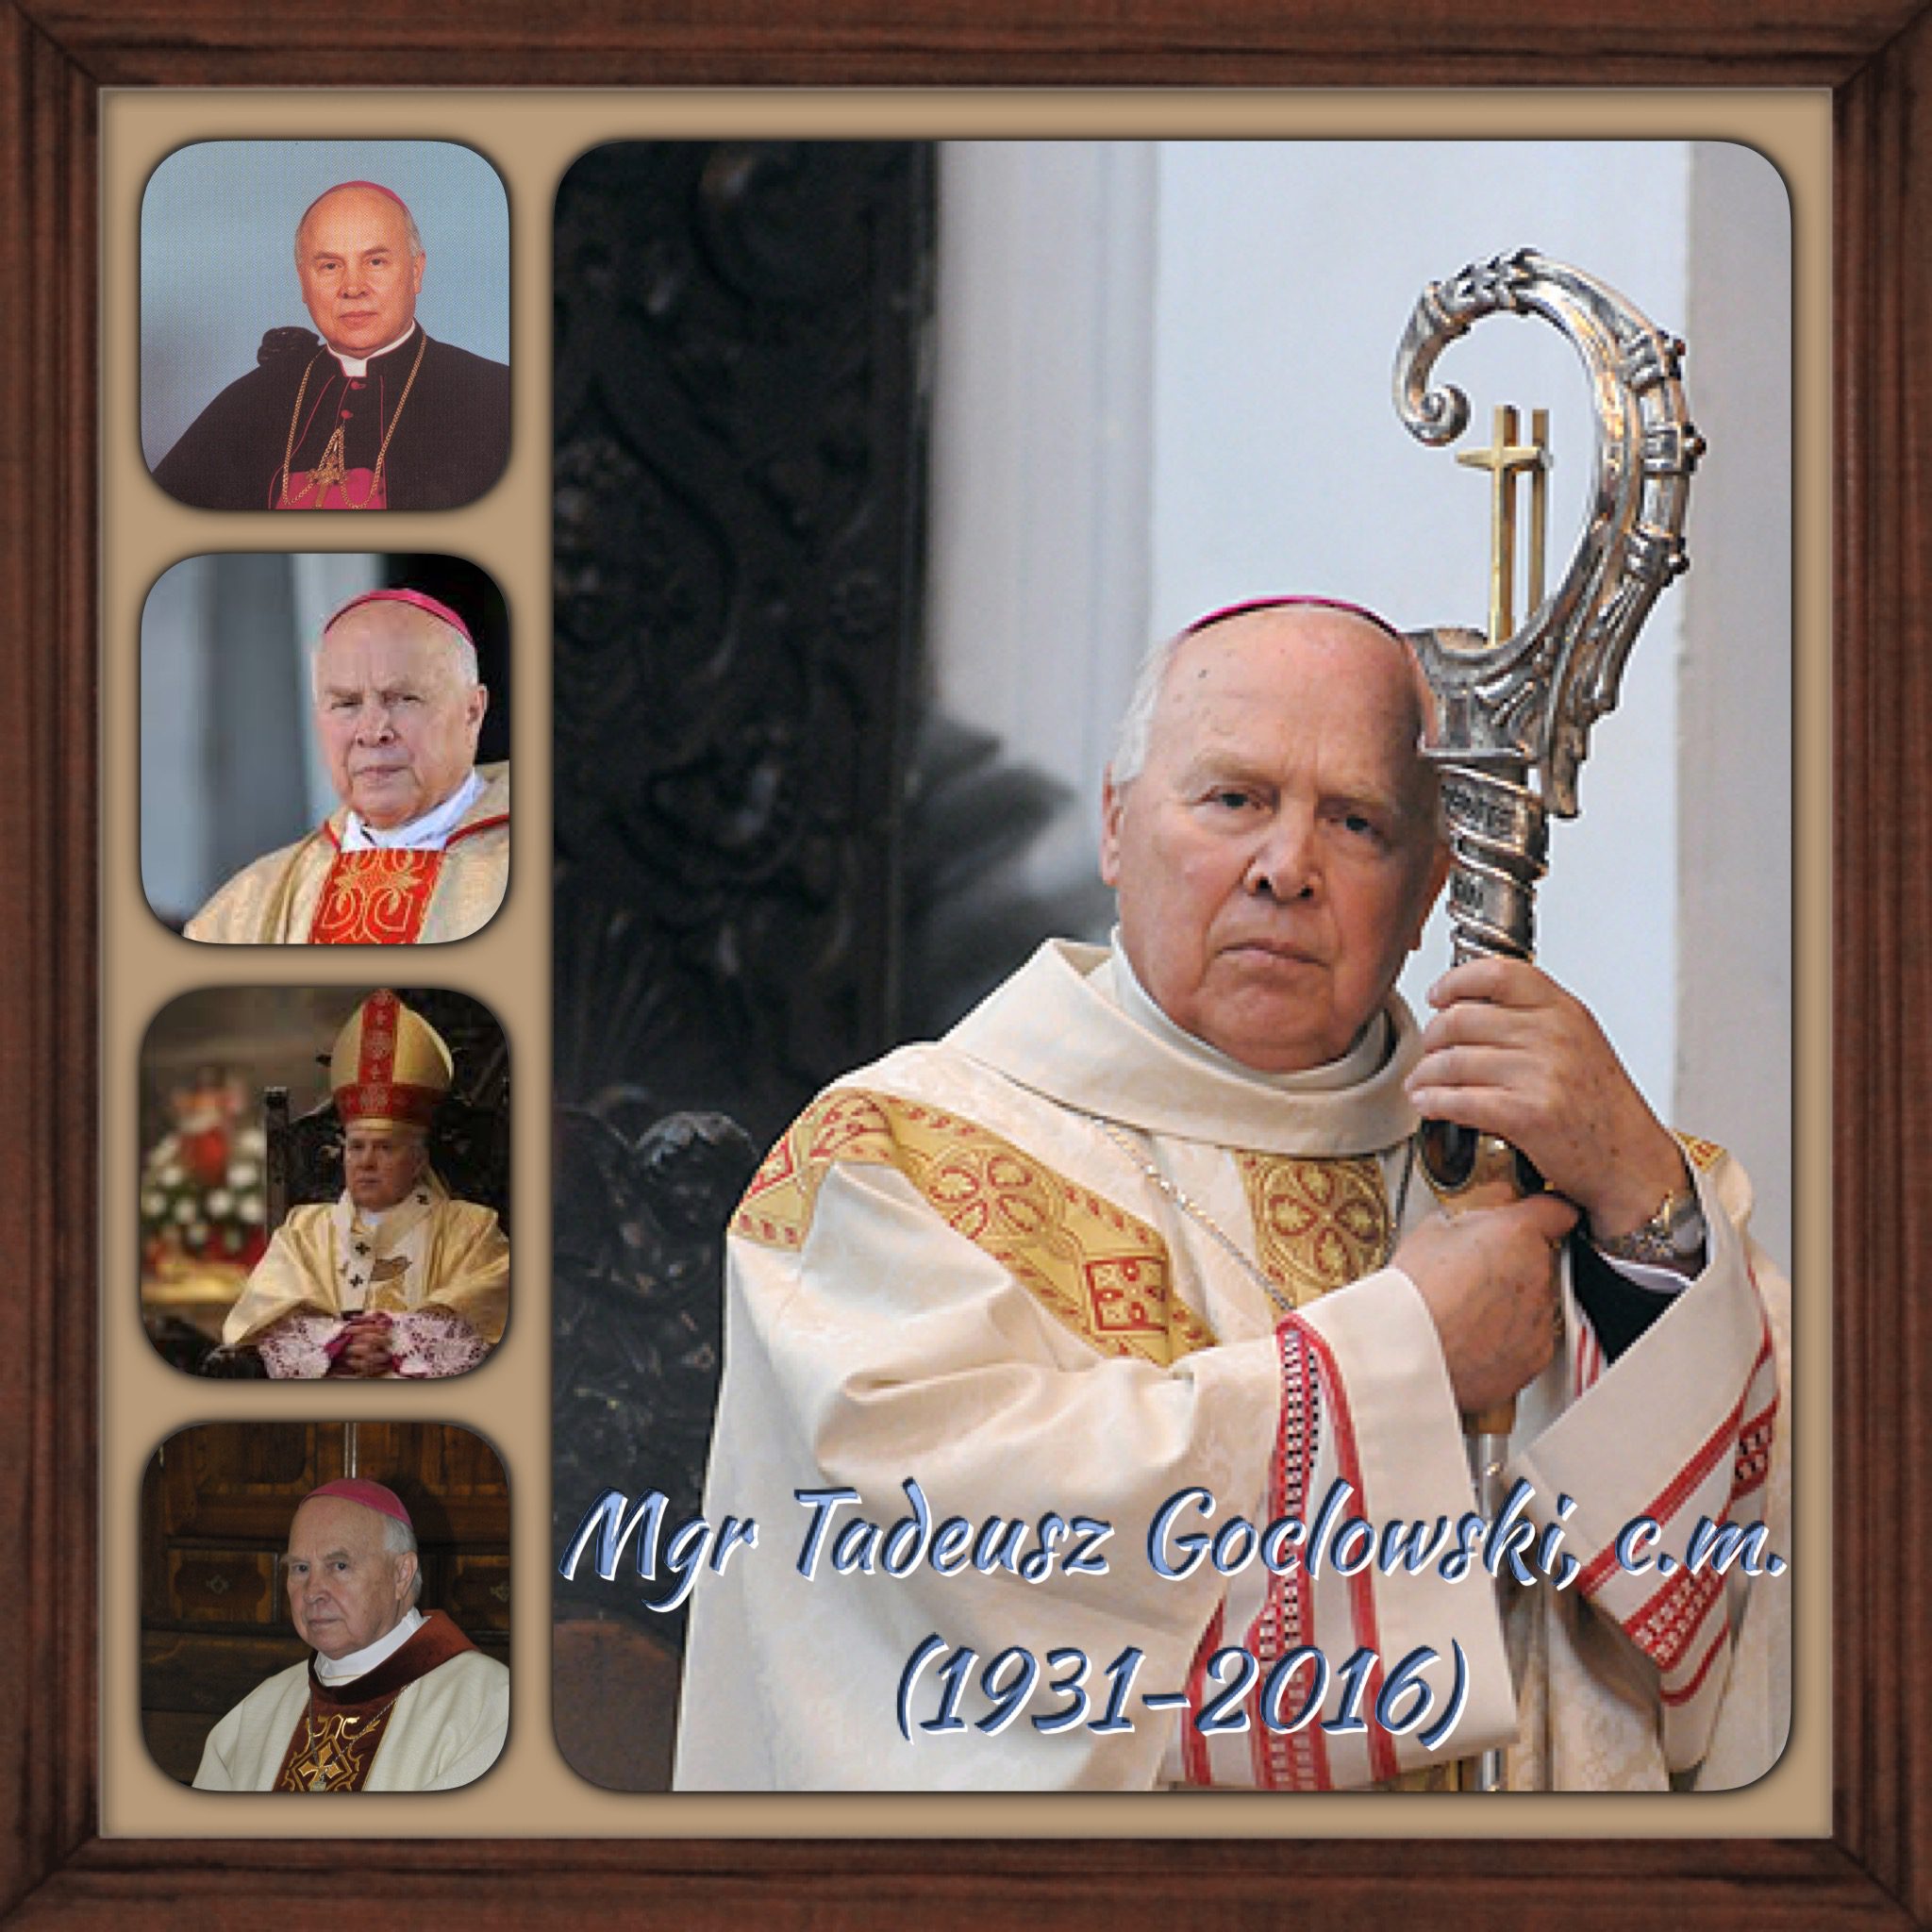 Pologne: Décès  de l’Archévêque Emérite de Gdansk Mgr Tadeusz Goclowski, c.m.